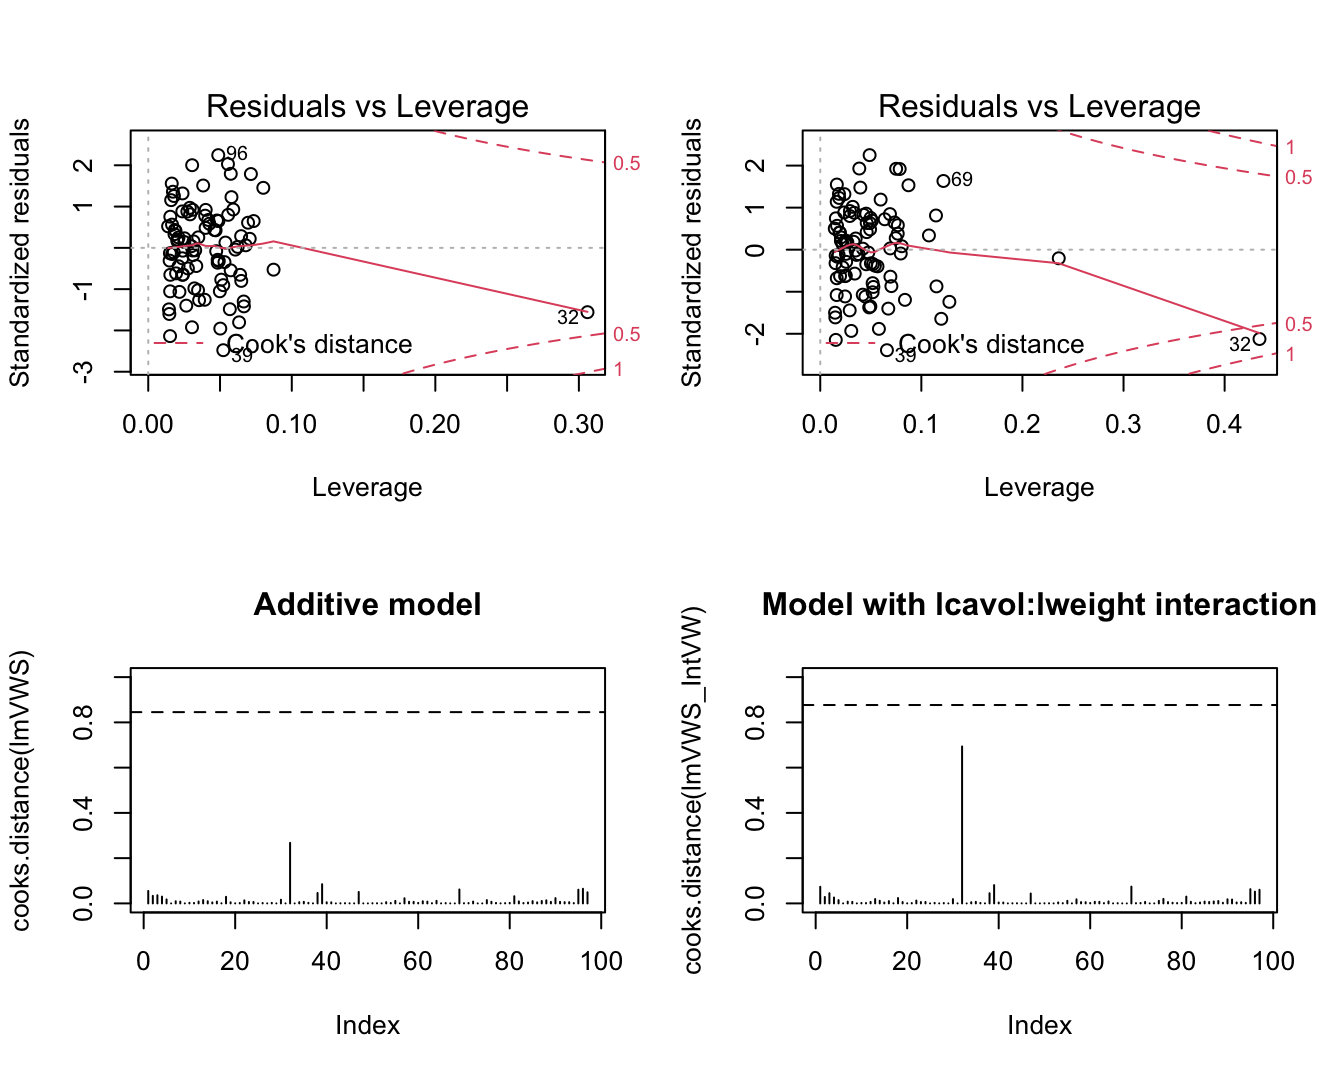 Evaluatie van de invloed van individuele observaties op het additieve model (links) en het model met de lcavol:lweight interactie (rechts).